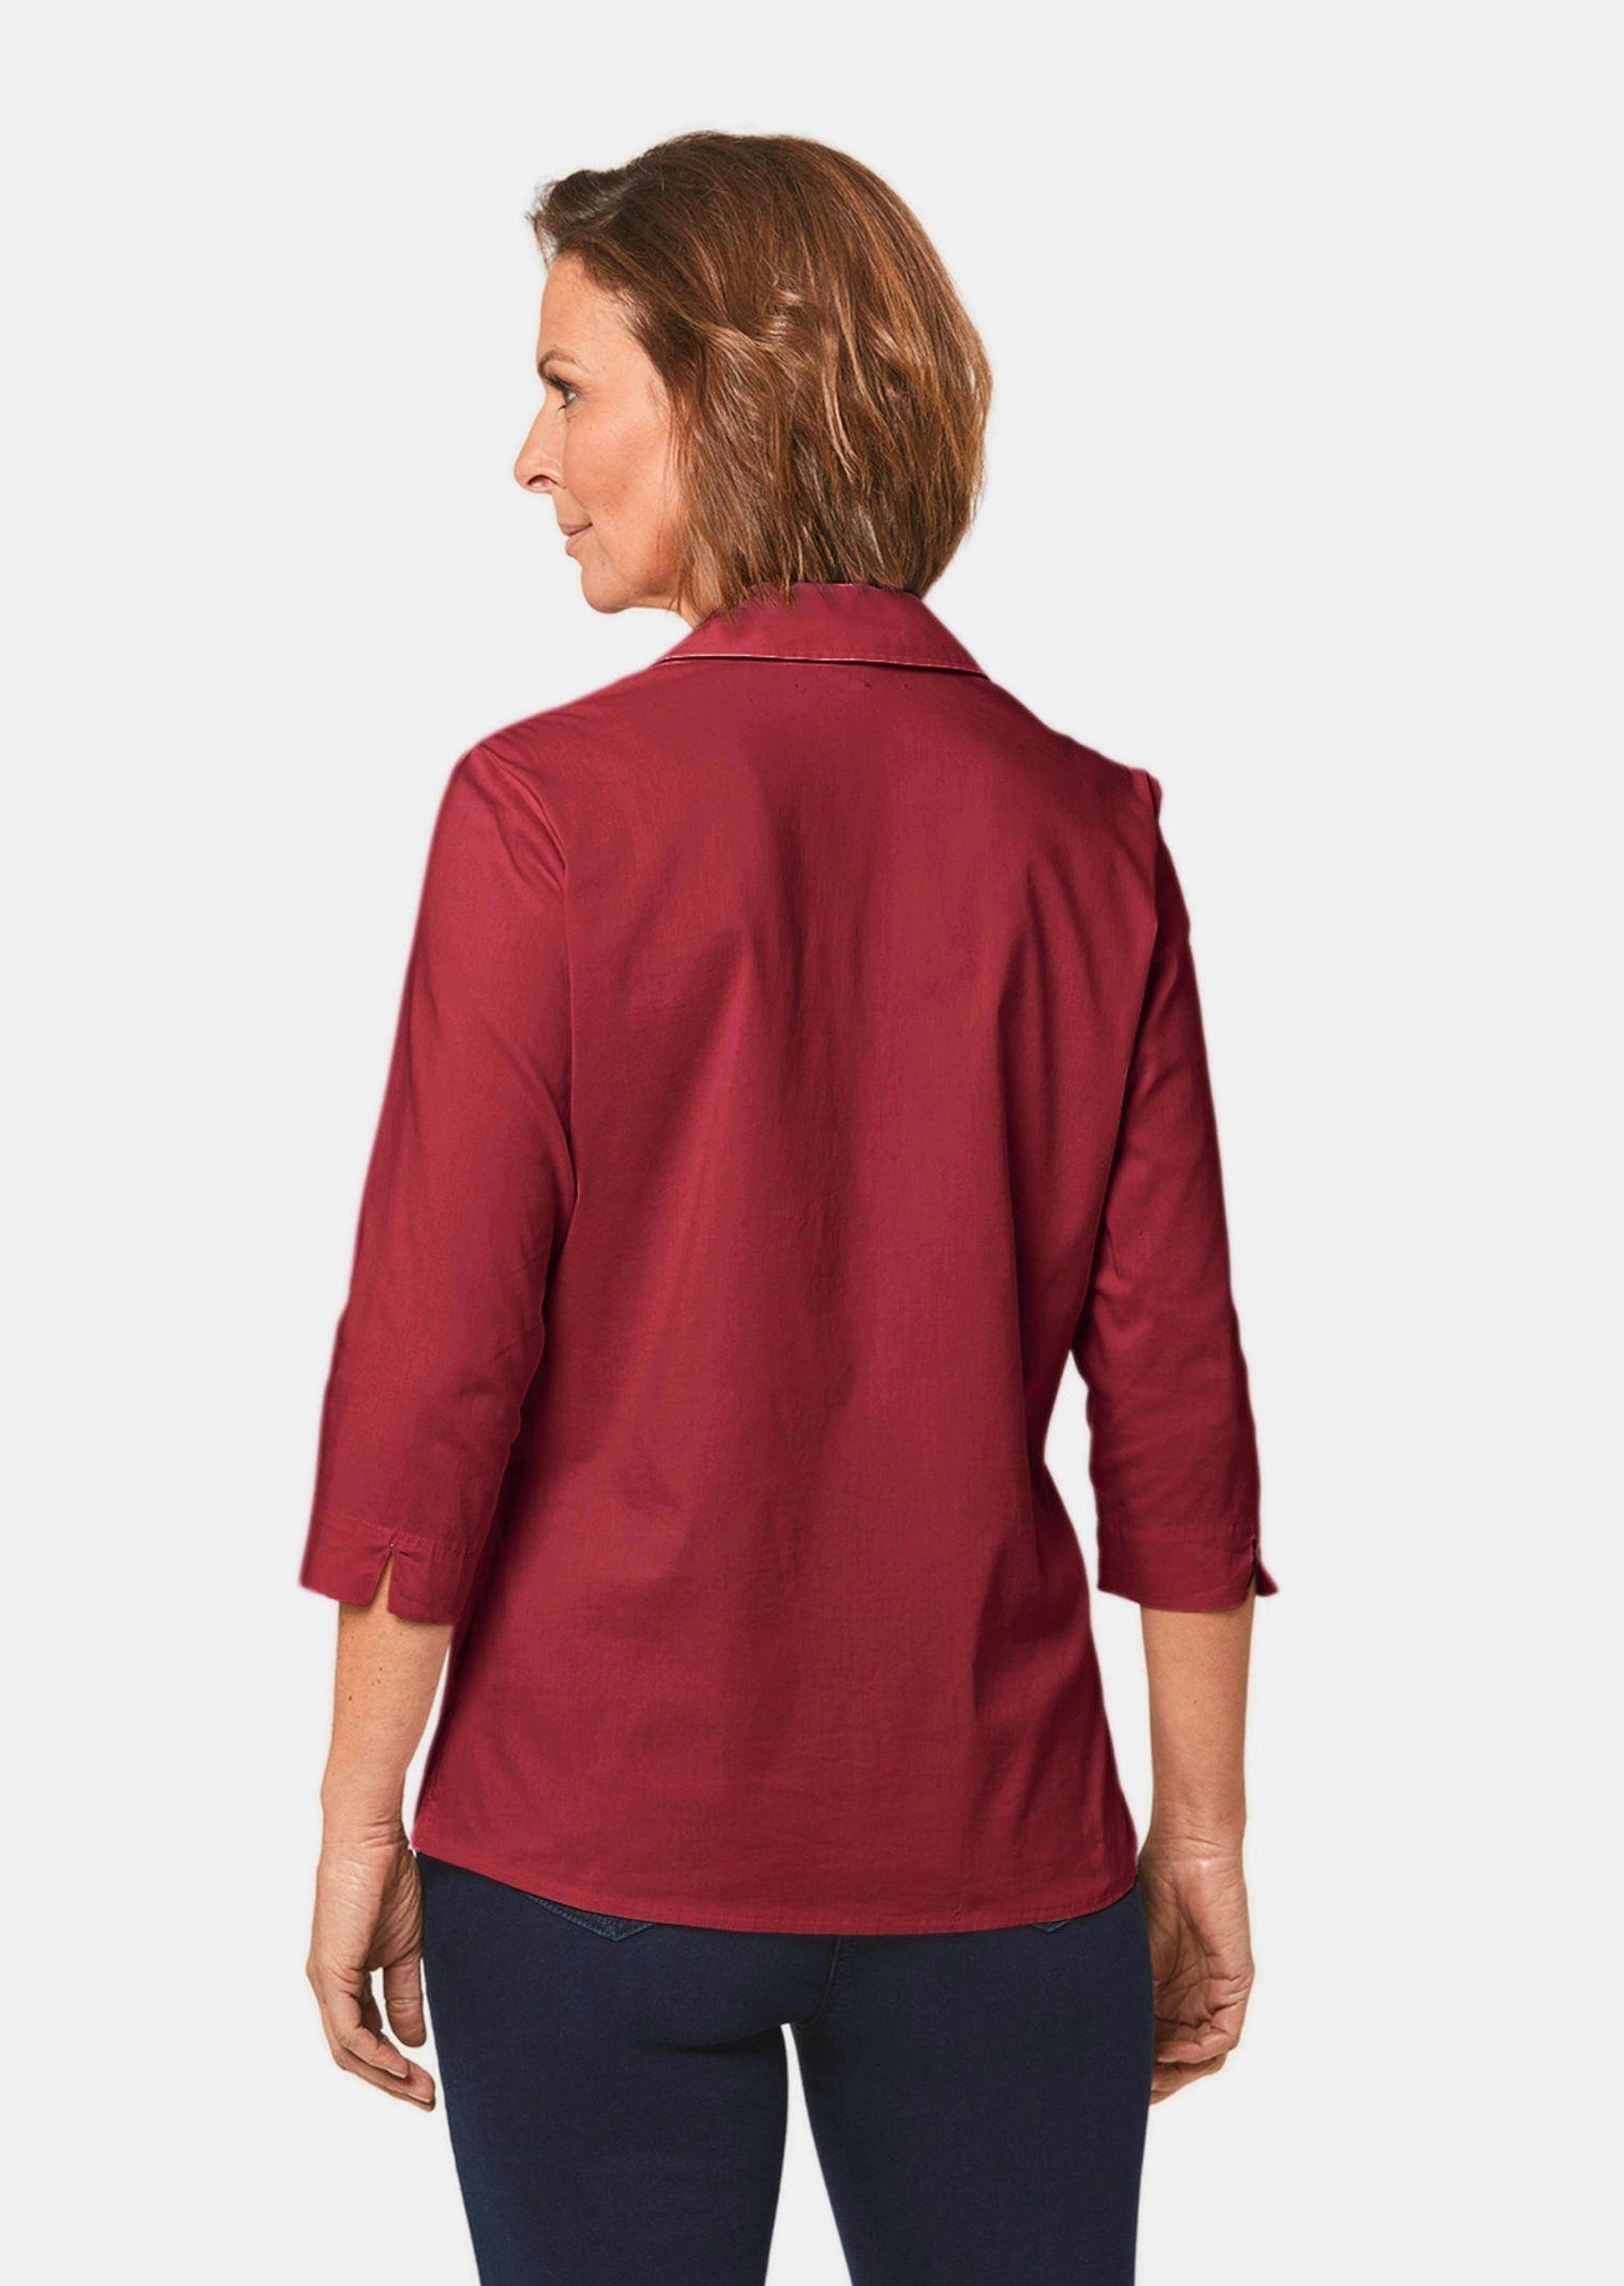 Stretchbequeme GOLDNER mit Baumwolle Kurzgröße: Hemdbluse Bluse dunkelrot